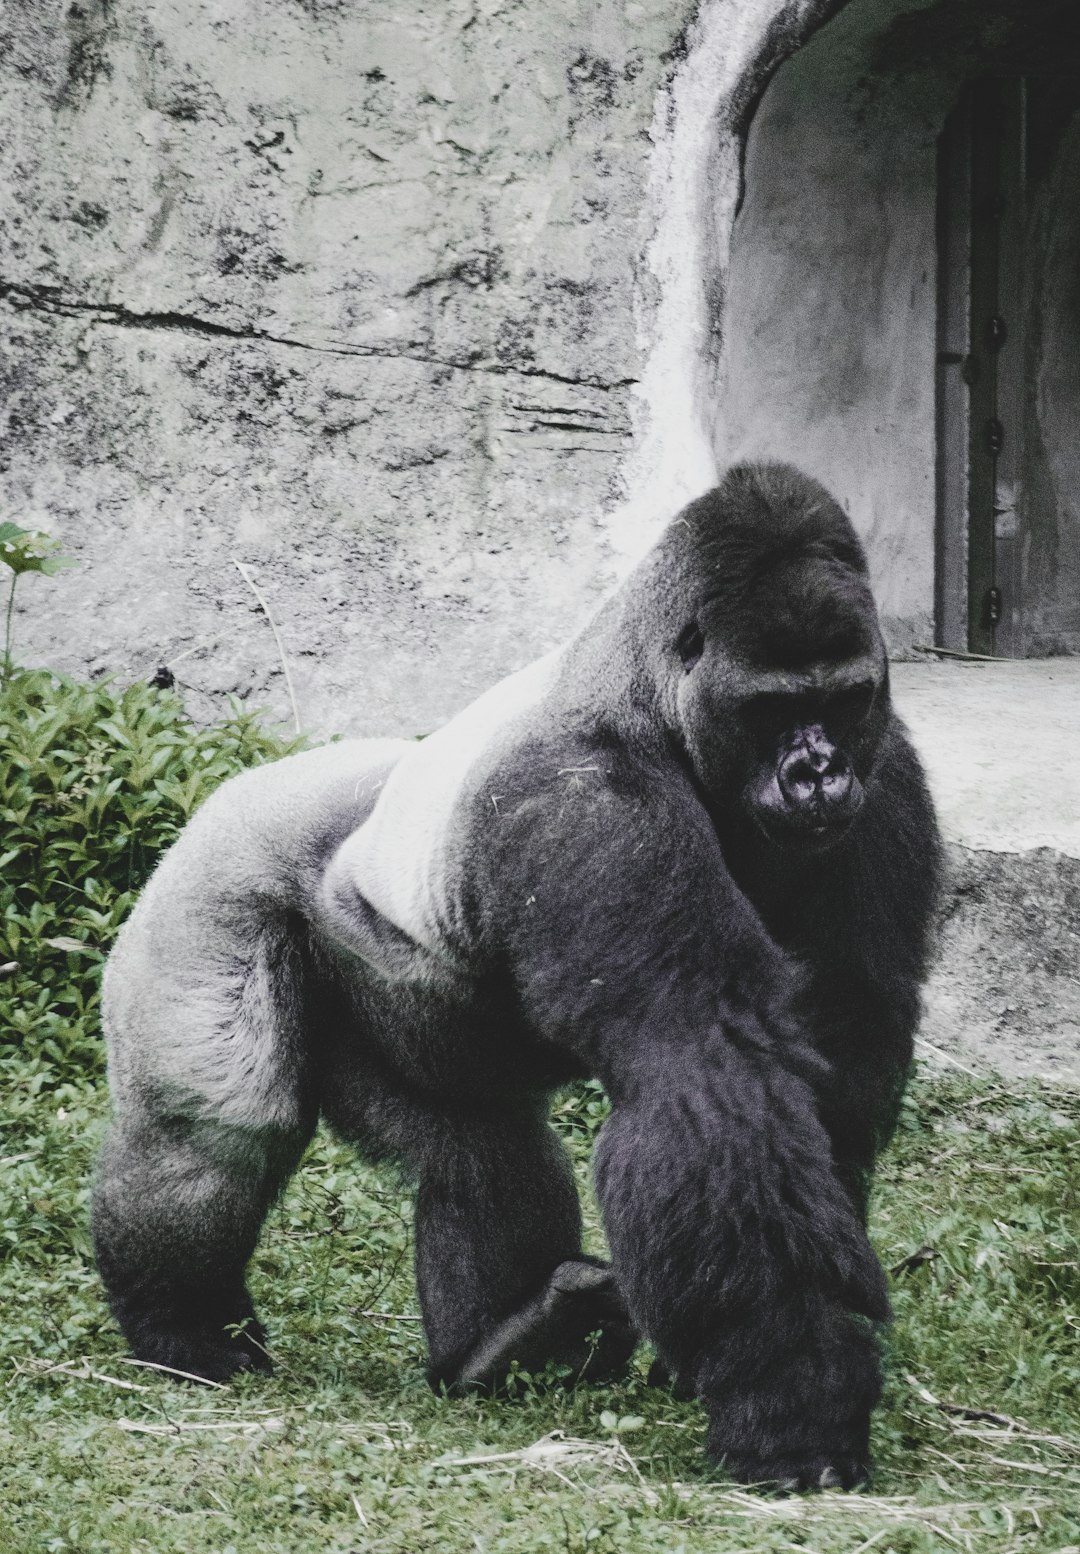  black gorilla sitting on ground gorilla